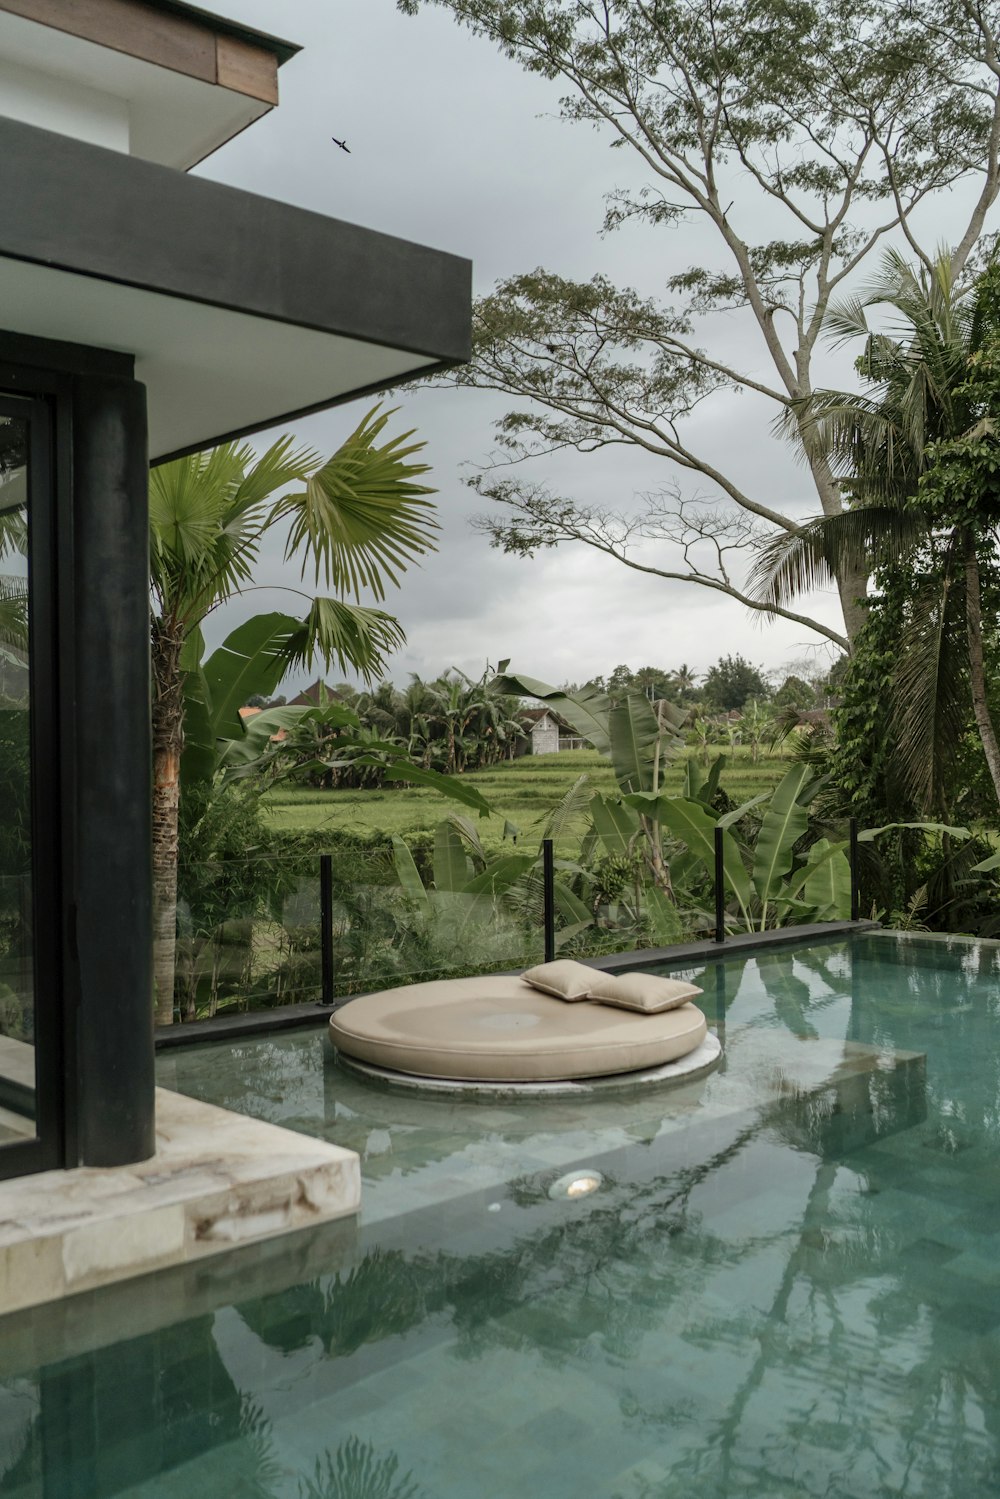 Foto zum Thema Ein großer pool mit einem liegestuhl daneben – Kostenloses  Bild zu Bali auf Unsplash